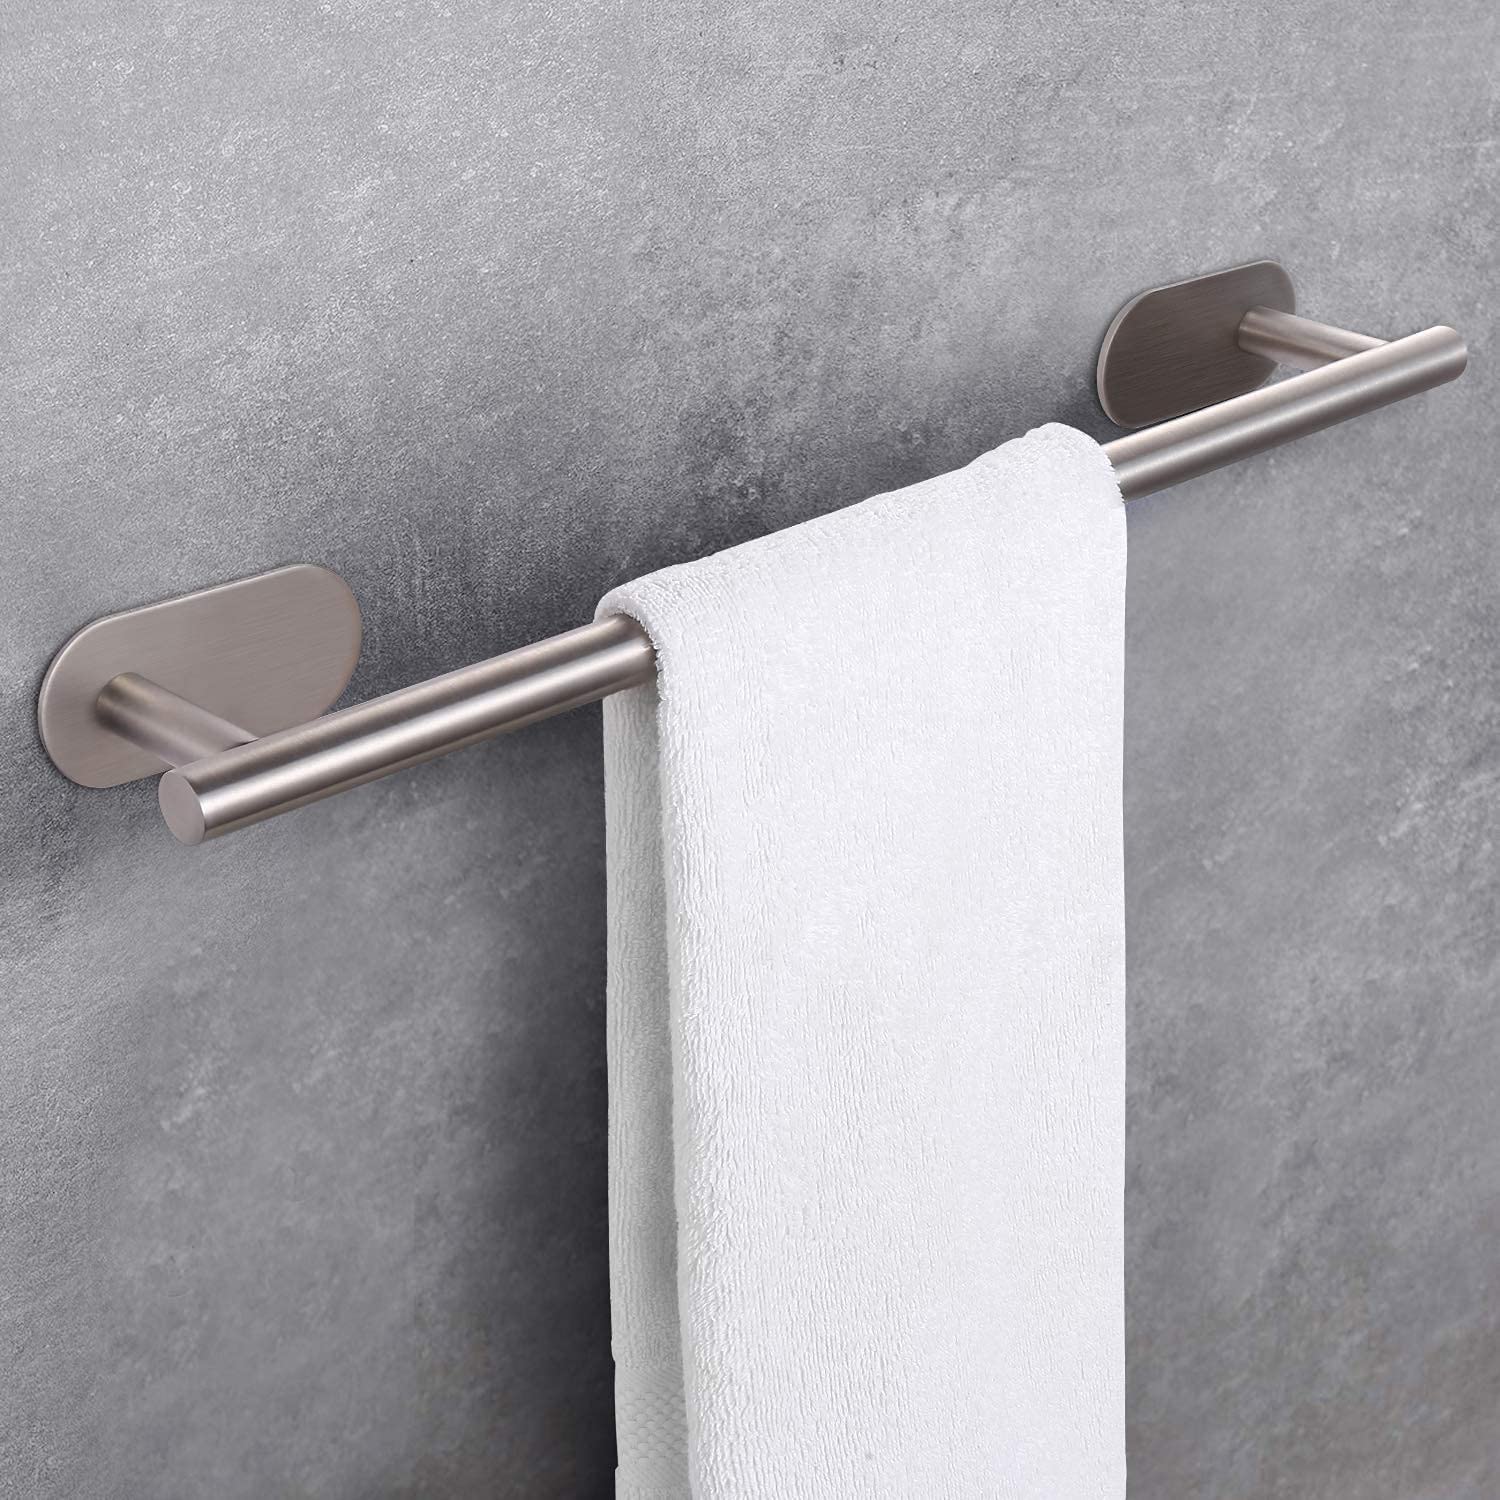 Porte-serviette pour salle de bains adhésif ou installé avec